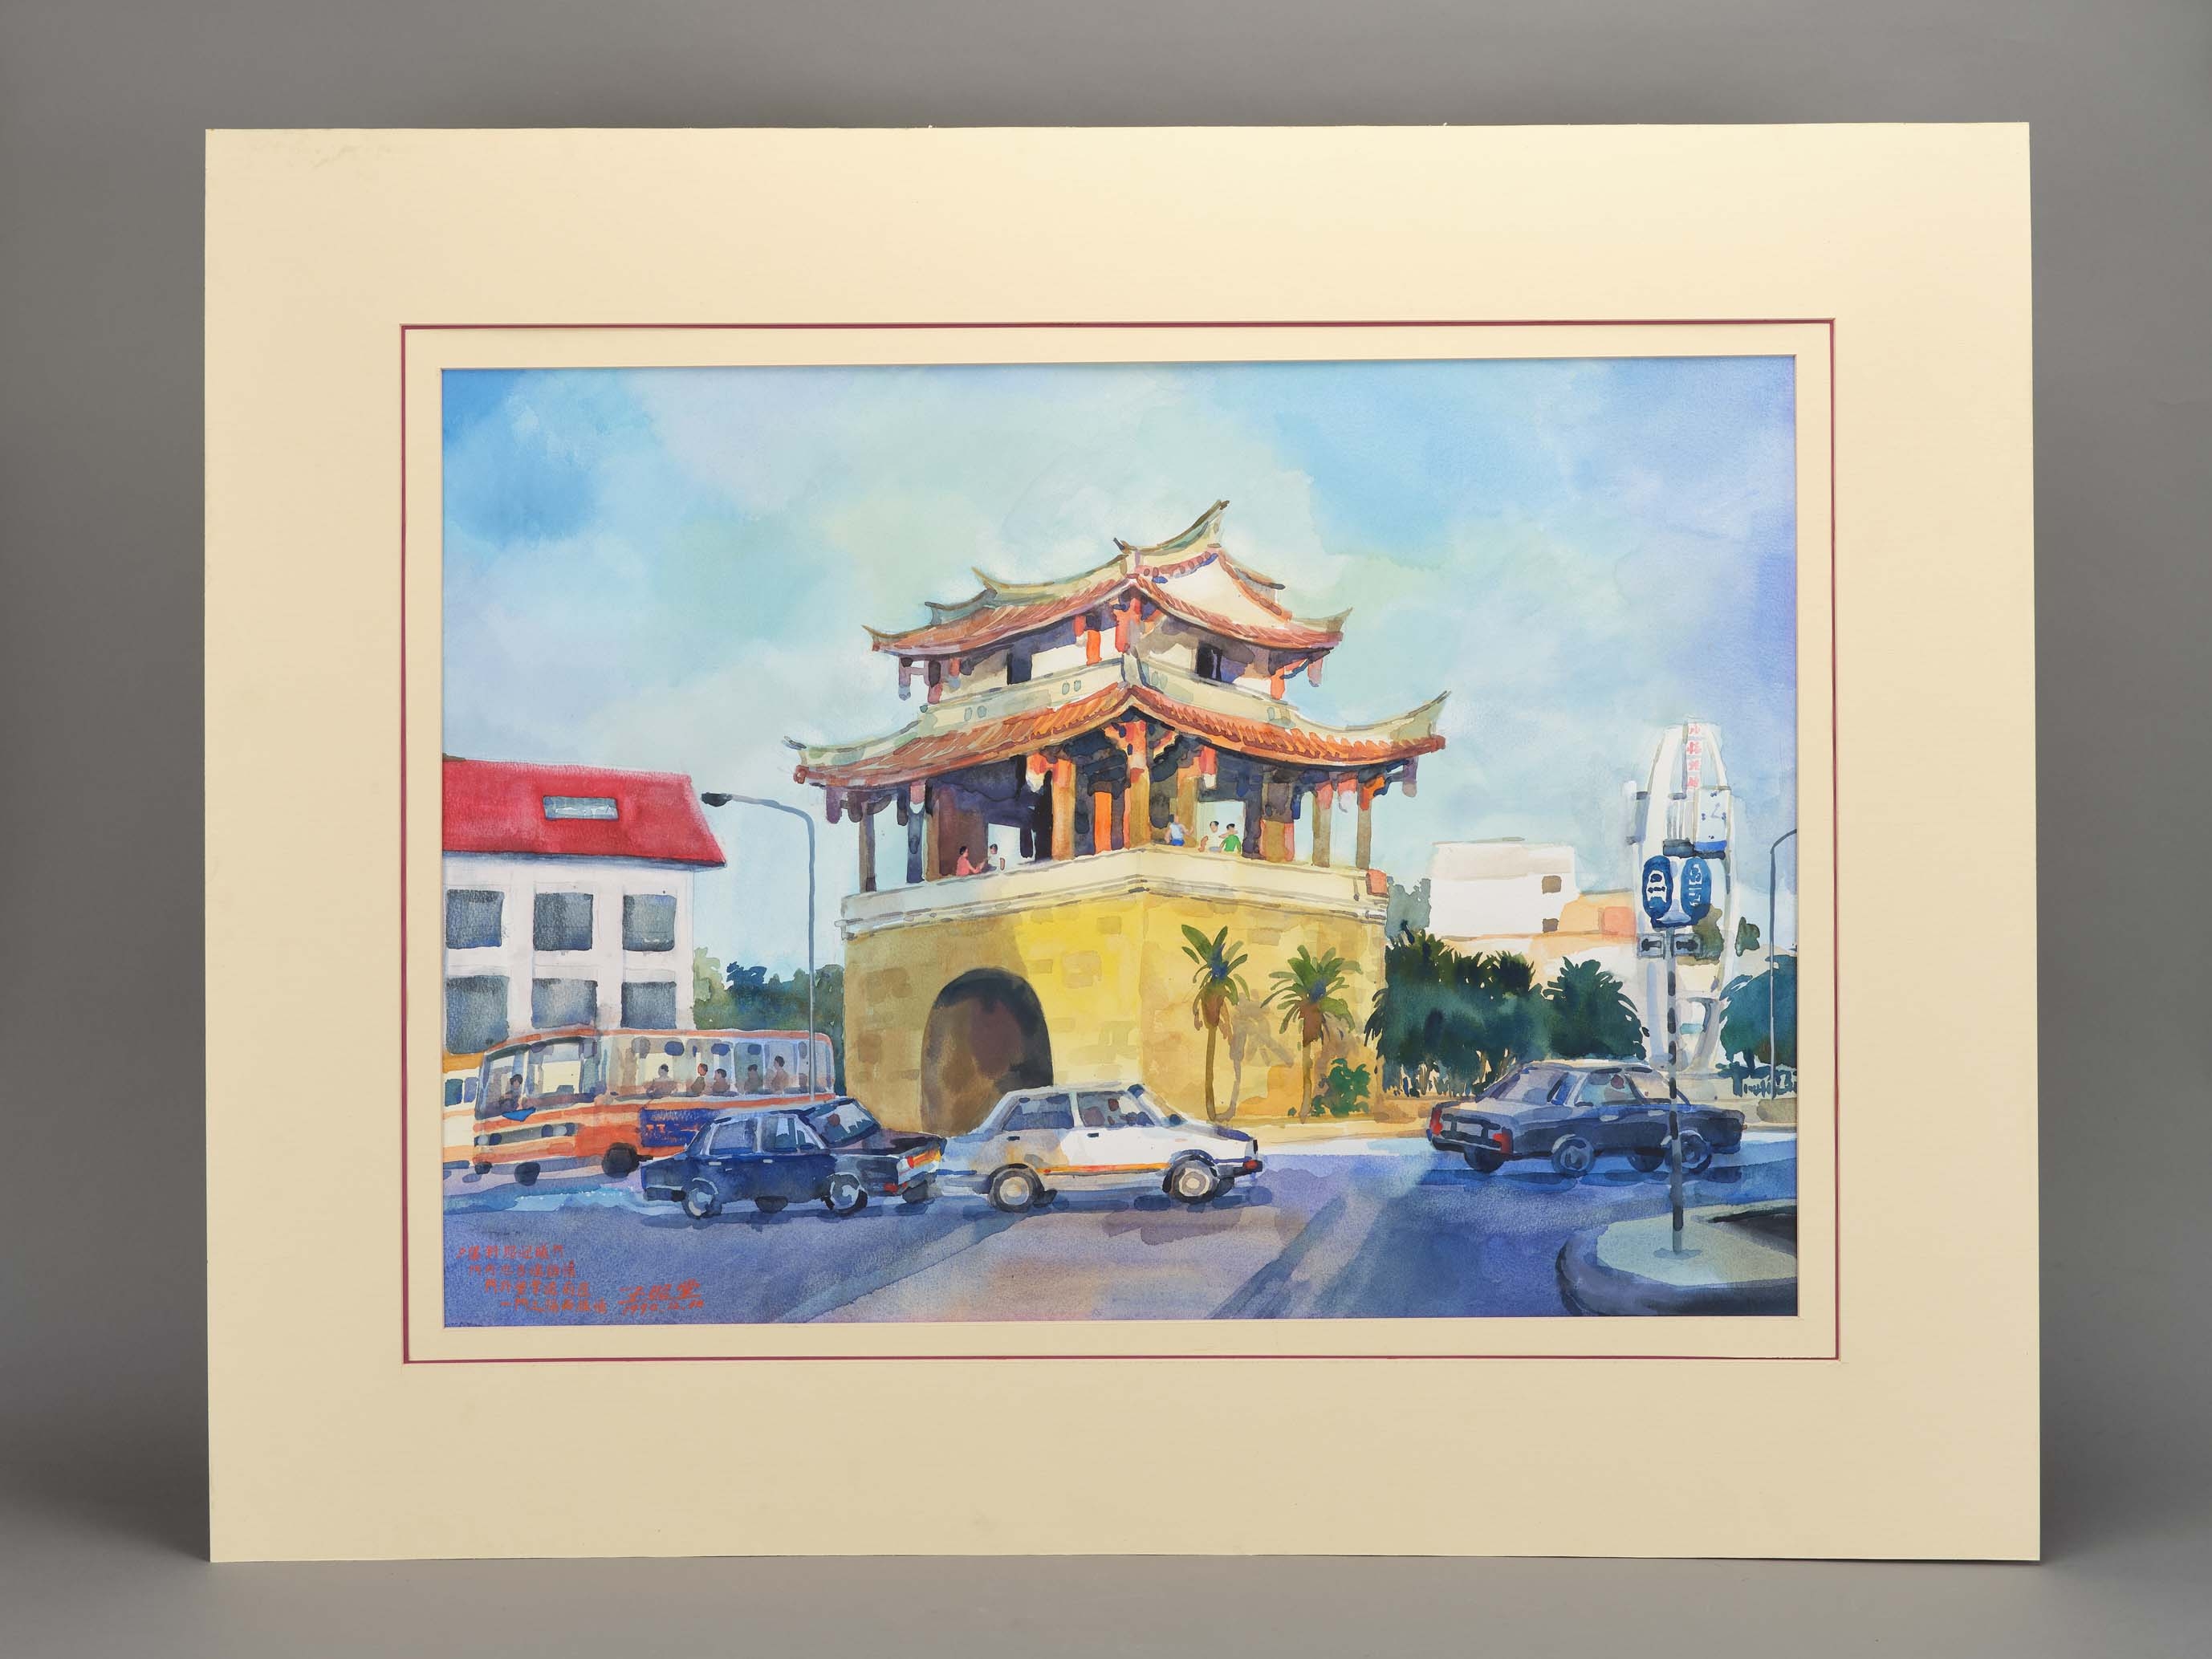 王昭堂以寫生的方式，透過水彩描繪紀錄了1990年的東門城樓，他巧妙運用寒暖色調，表達冬季夕陽餘暉中，光線和煦但氣溫已漸低的東門街景。